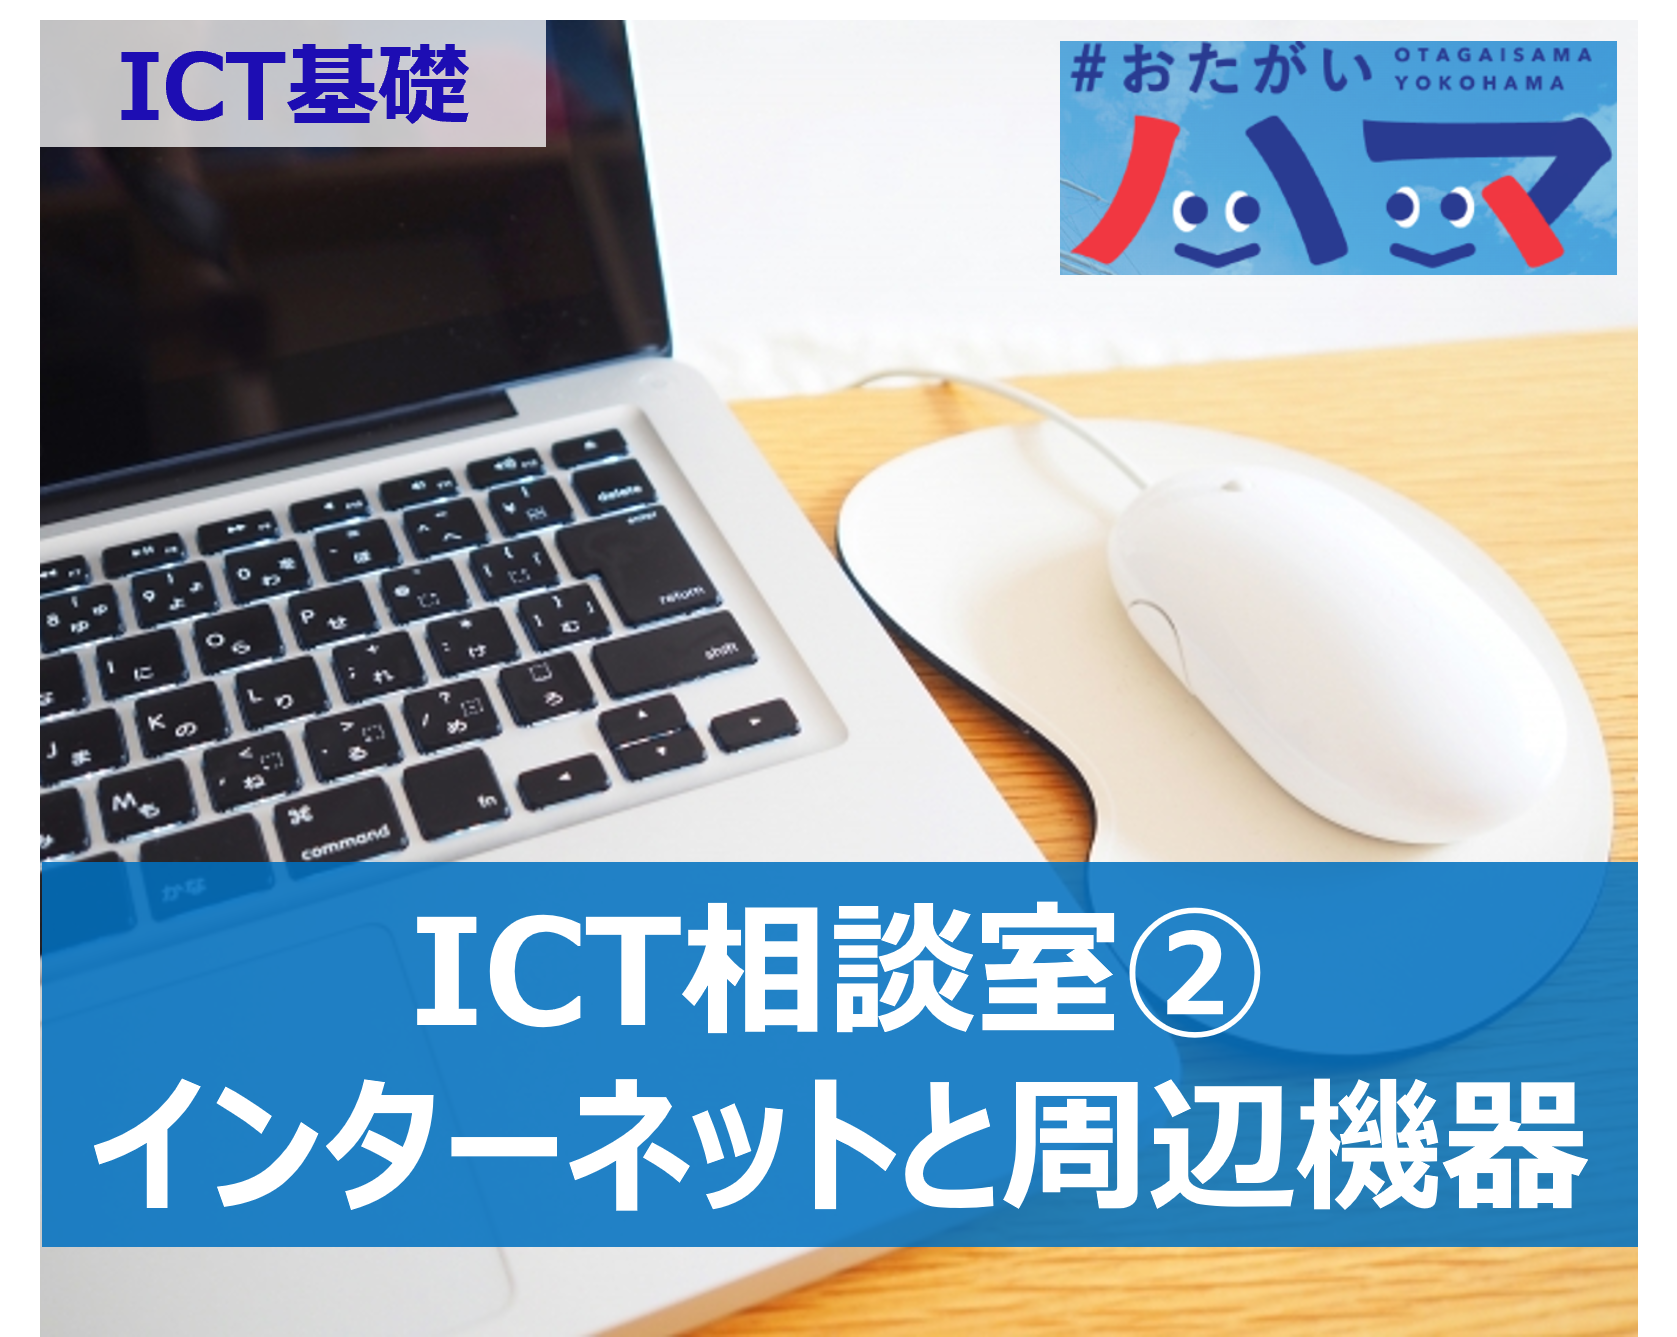  【ICT基礎】ICT相談室②　「サブスクとは」などITを使ったコミュニケーション